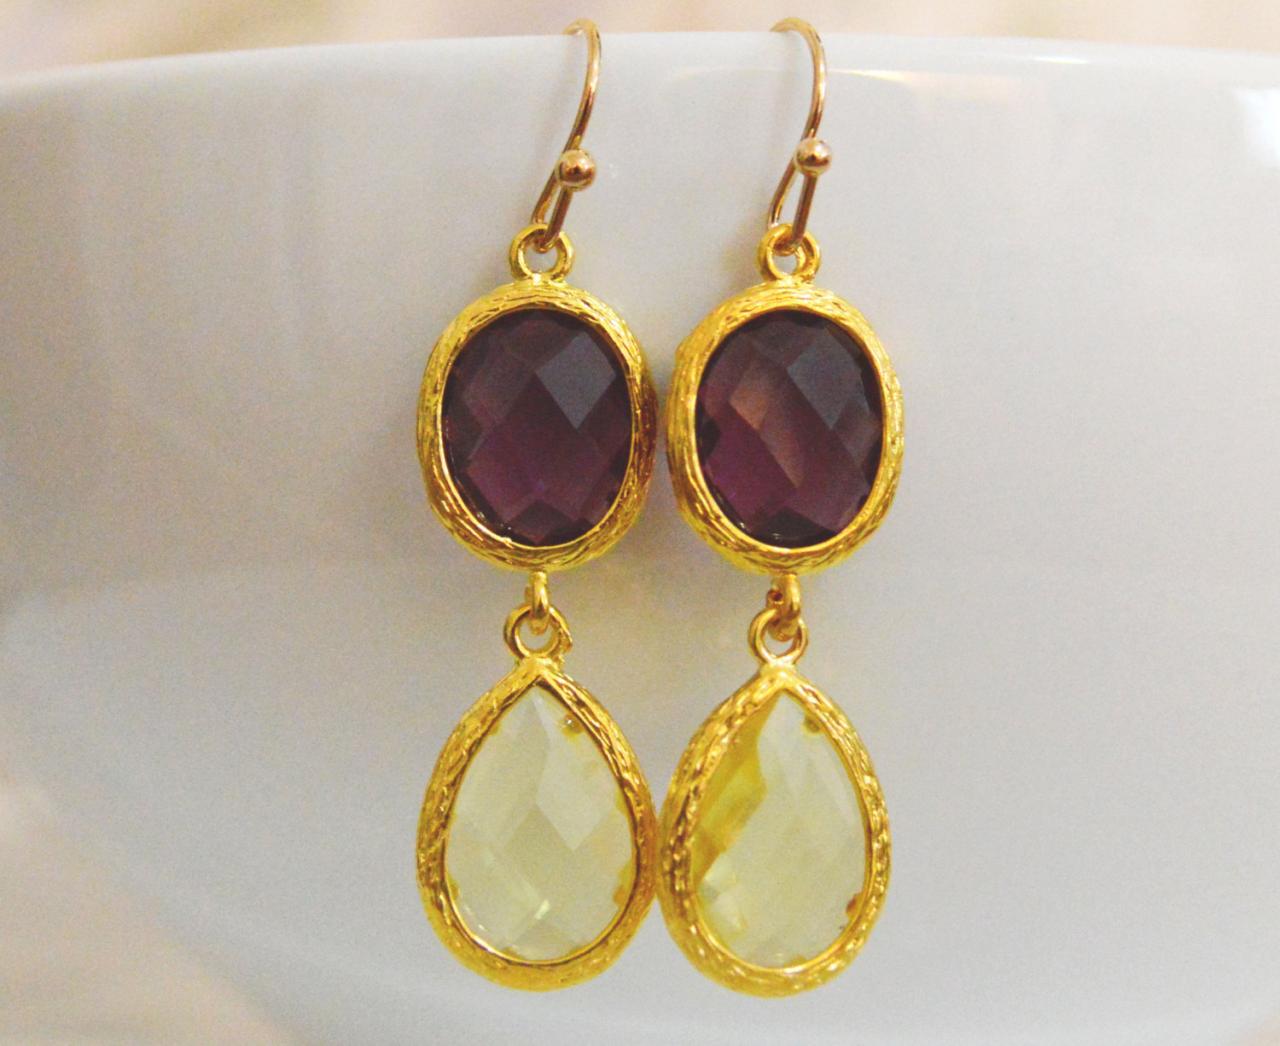 Glass Drop Earrings, Amethyst&lemon Yellow Drop Earrings, Dangle Earrings, Gold Plated Earrings/bridesmaid Gifts/everyday Jewelry/